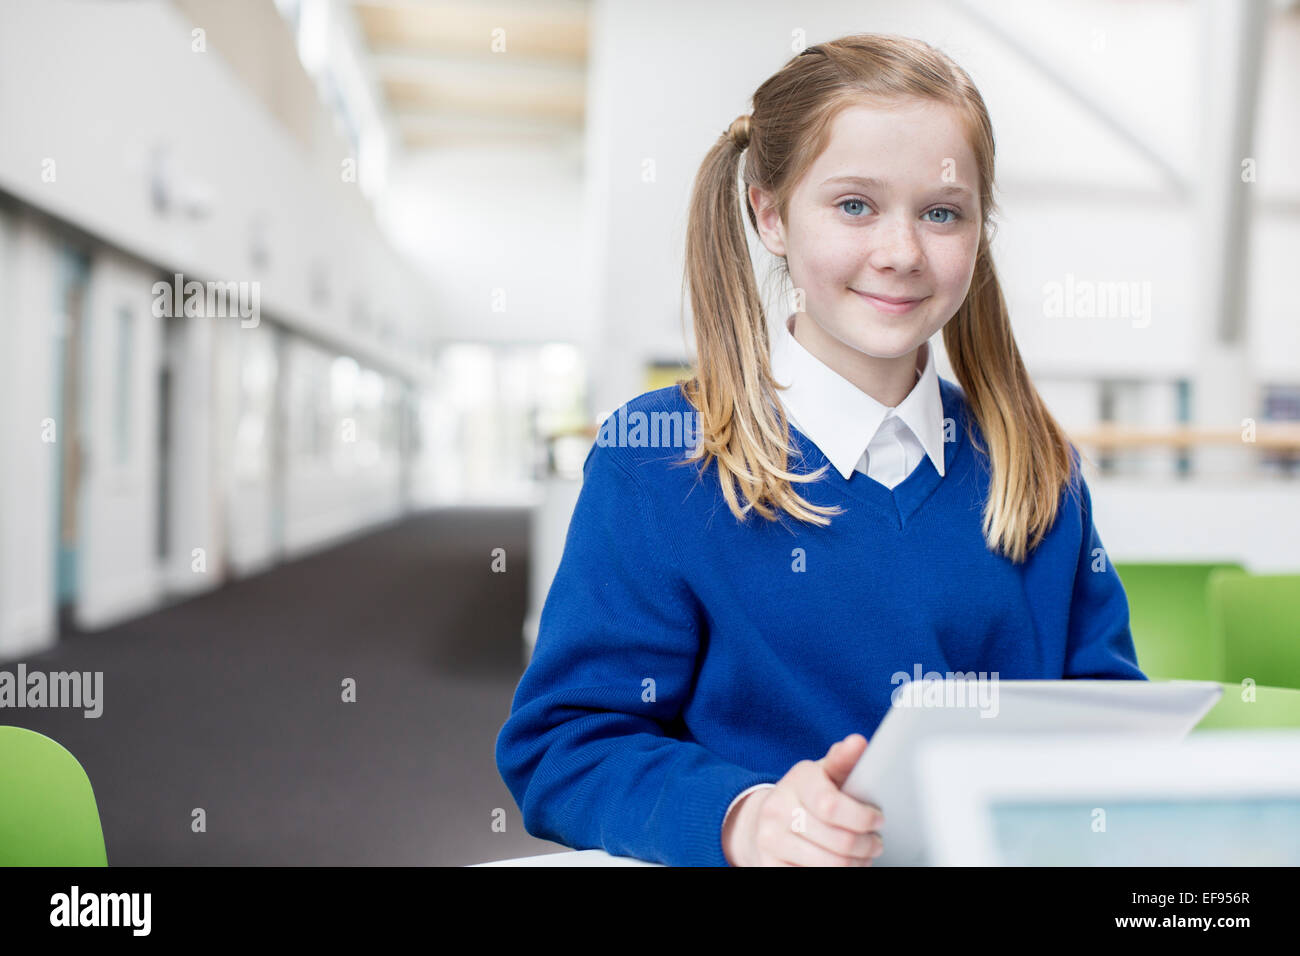 Ritratto di sorridente scuola elementare ragazza bionda con pig-tail holding tavoletta digitale Foto Stock